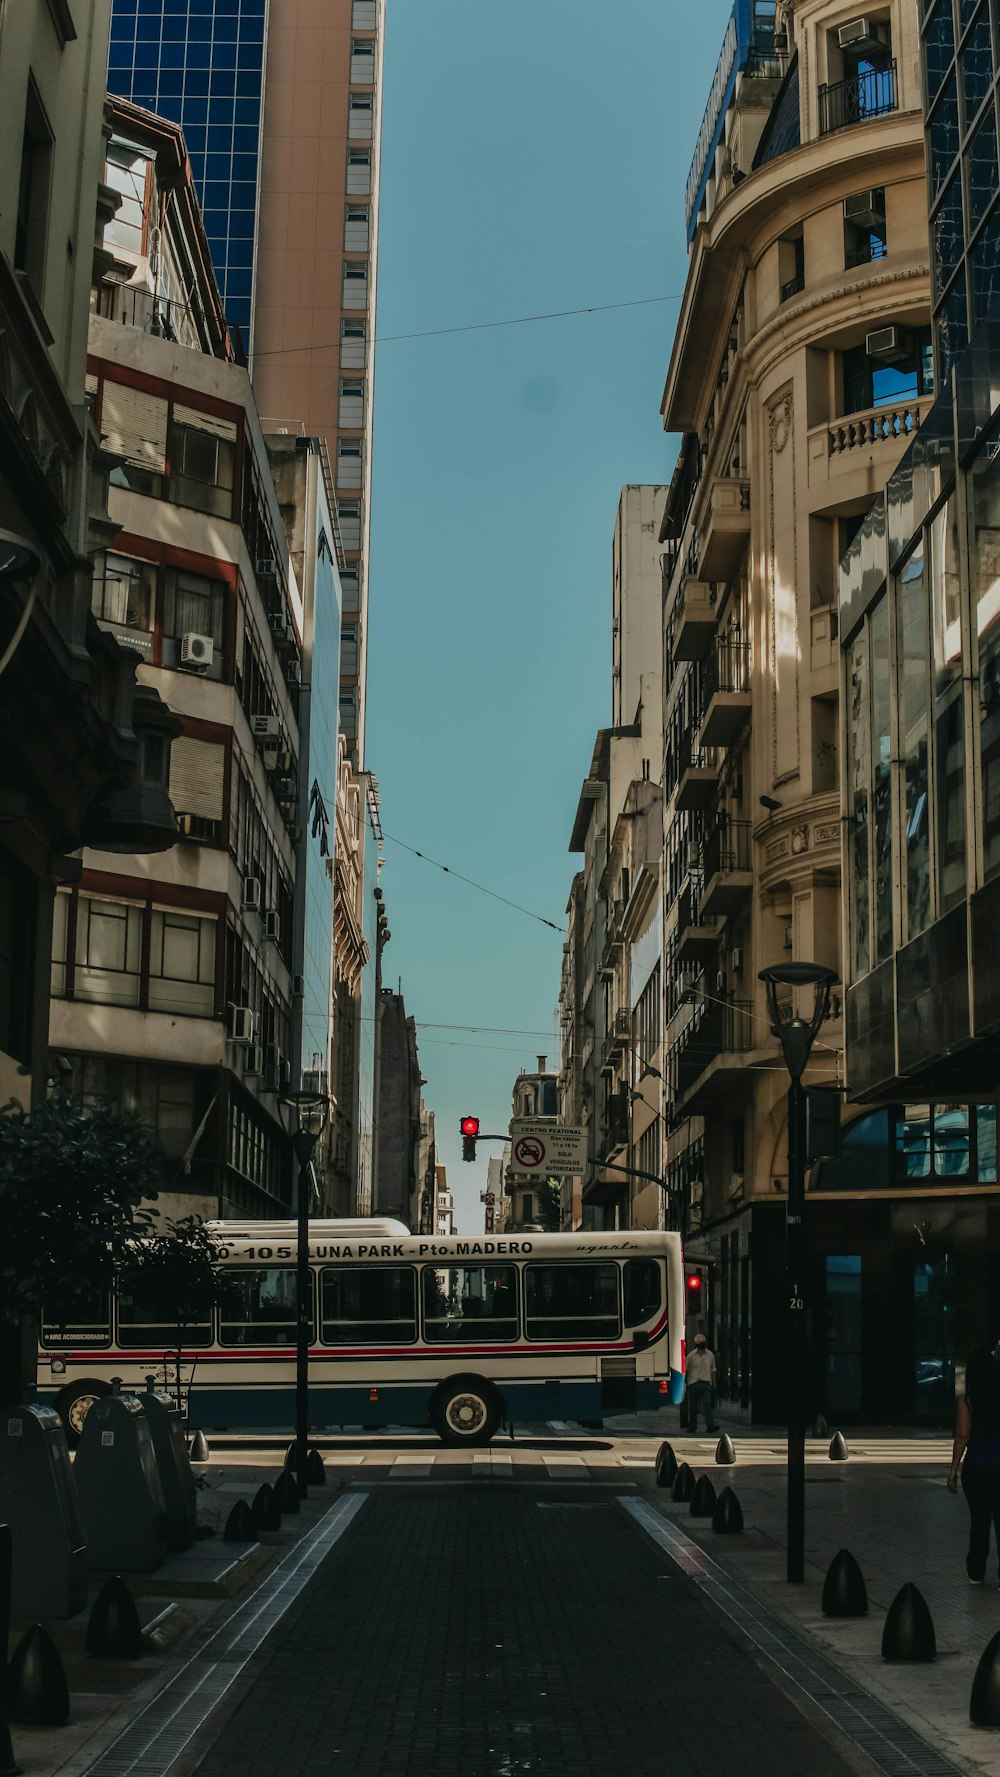 Autobus rosso e bianco sulla strada tra i grattacieli durante il giorno